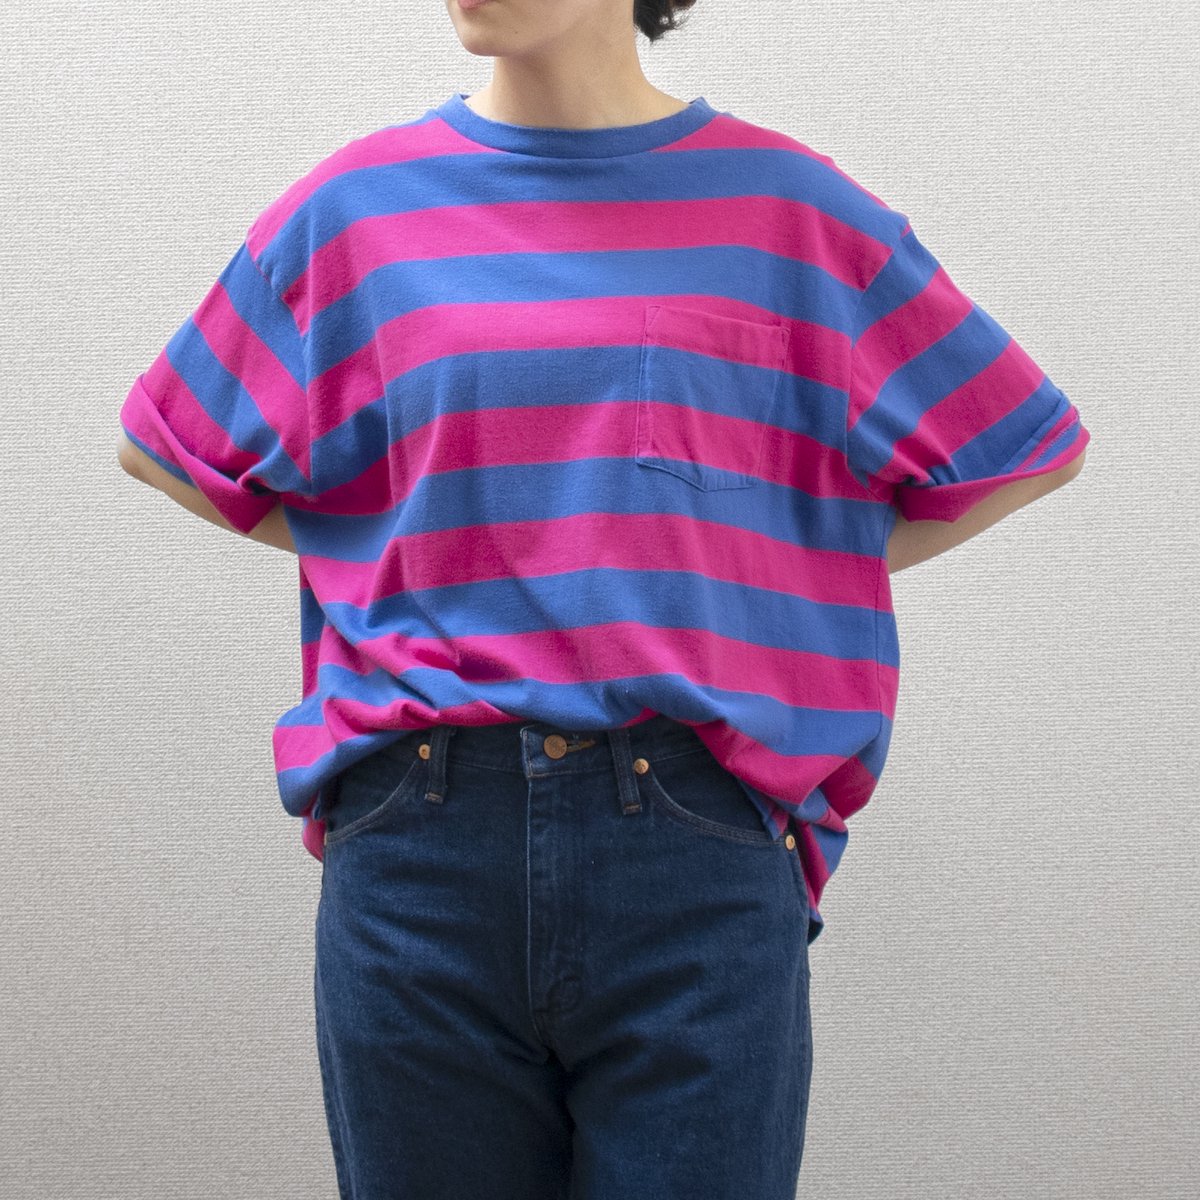 レディース] 1990s USA製 ランズエンド ビッグサイズ ボーダー Tシャツ ピンク×ブルー [LAND'S END]